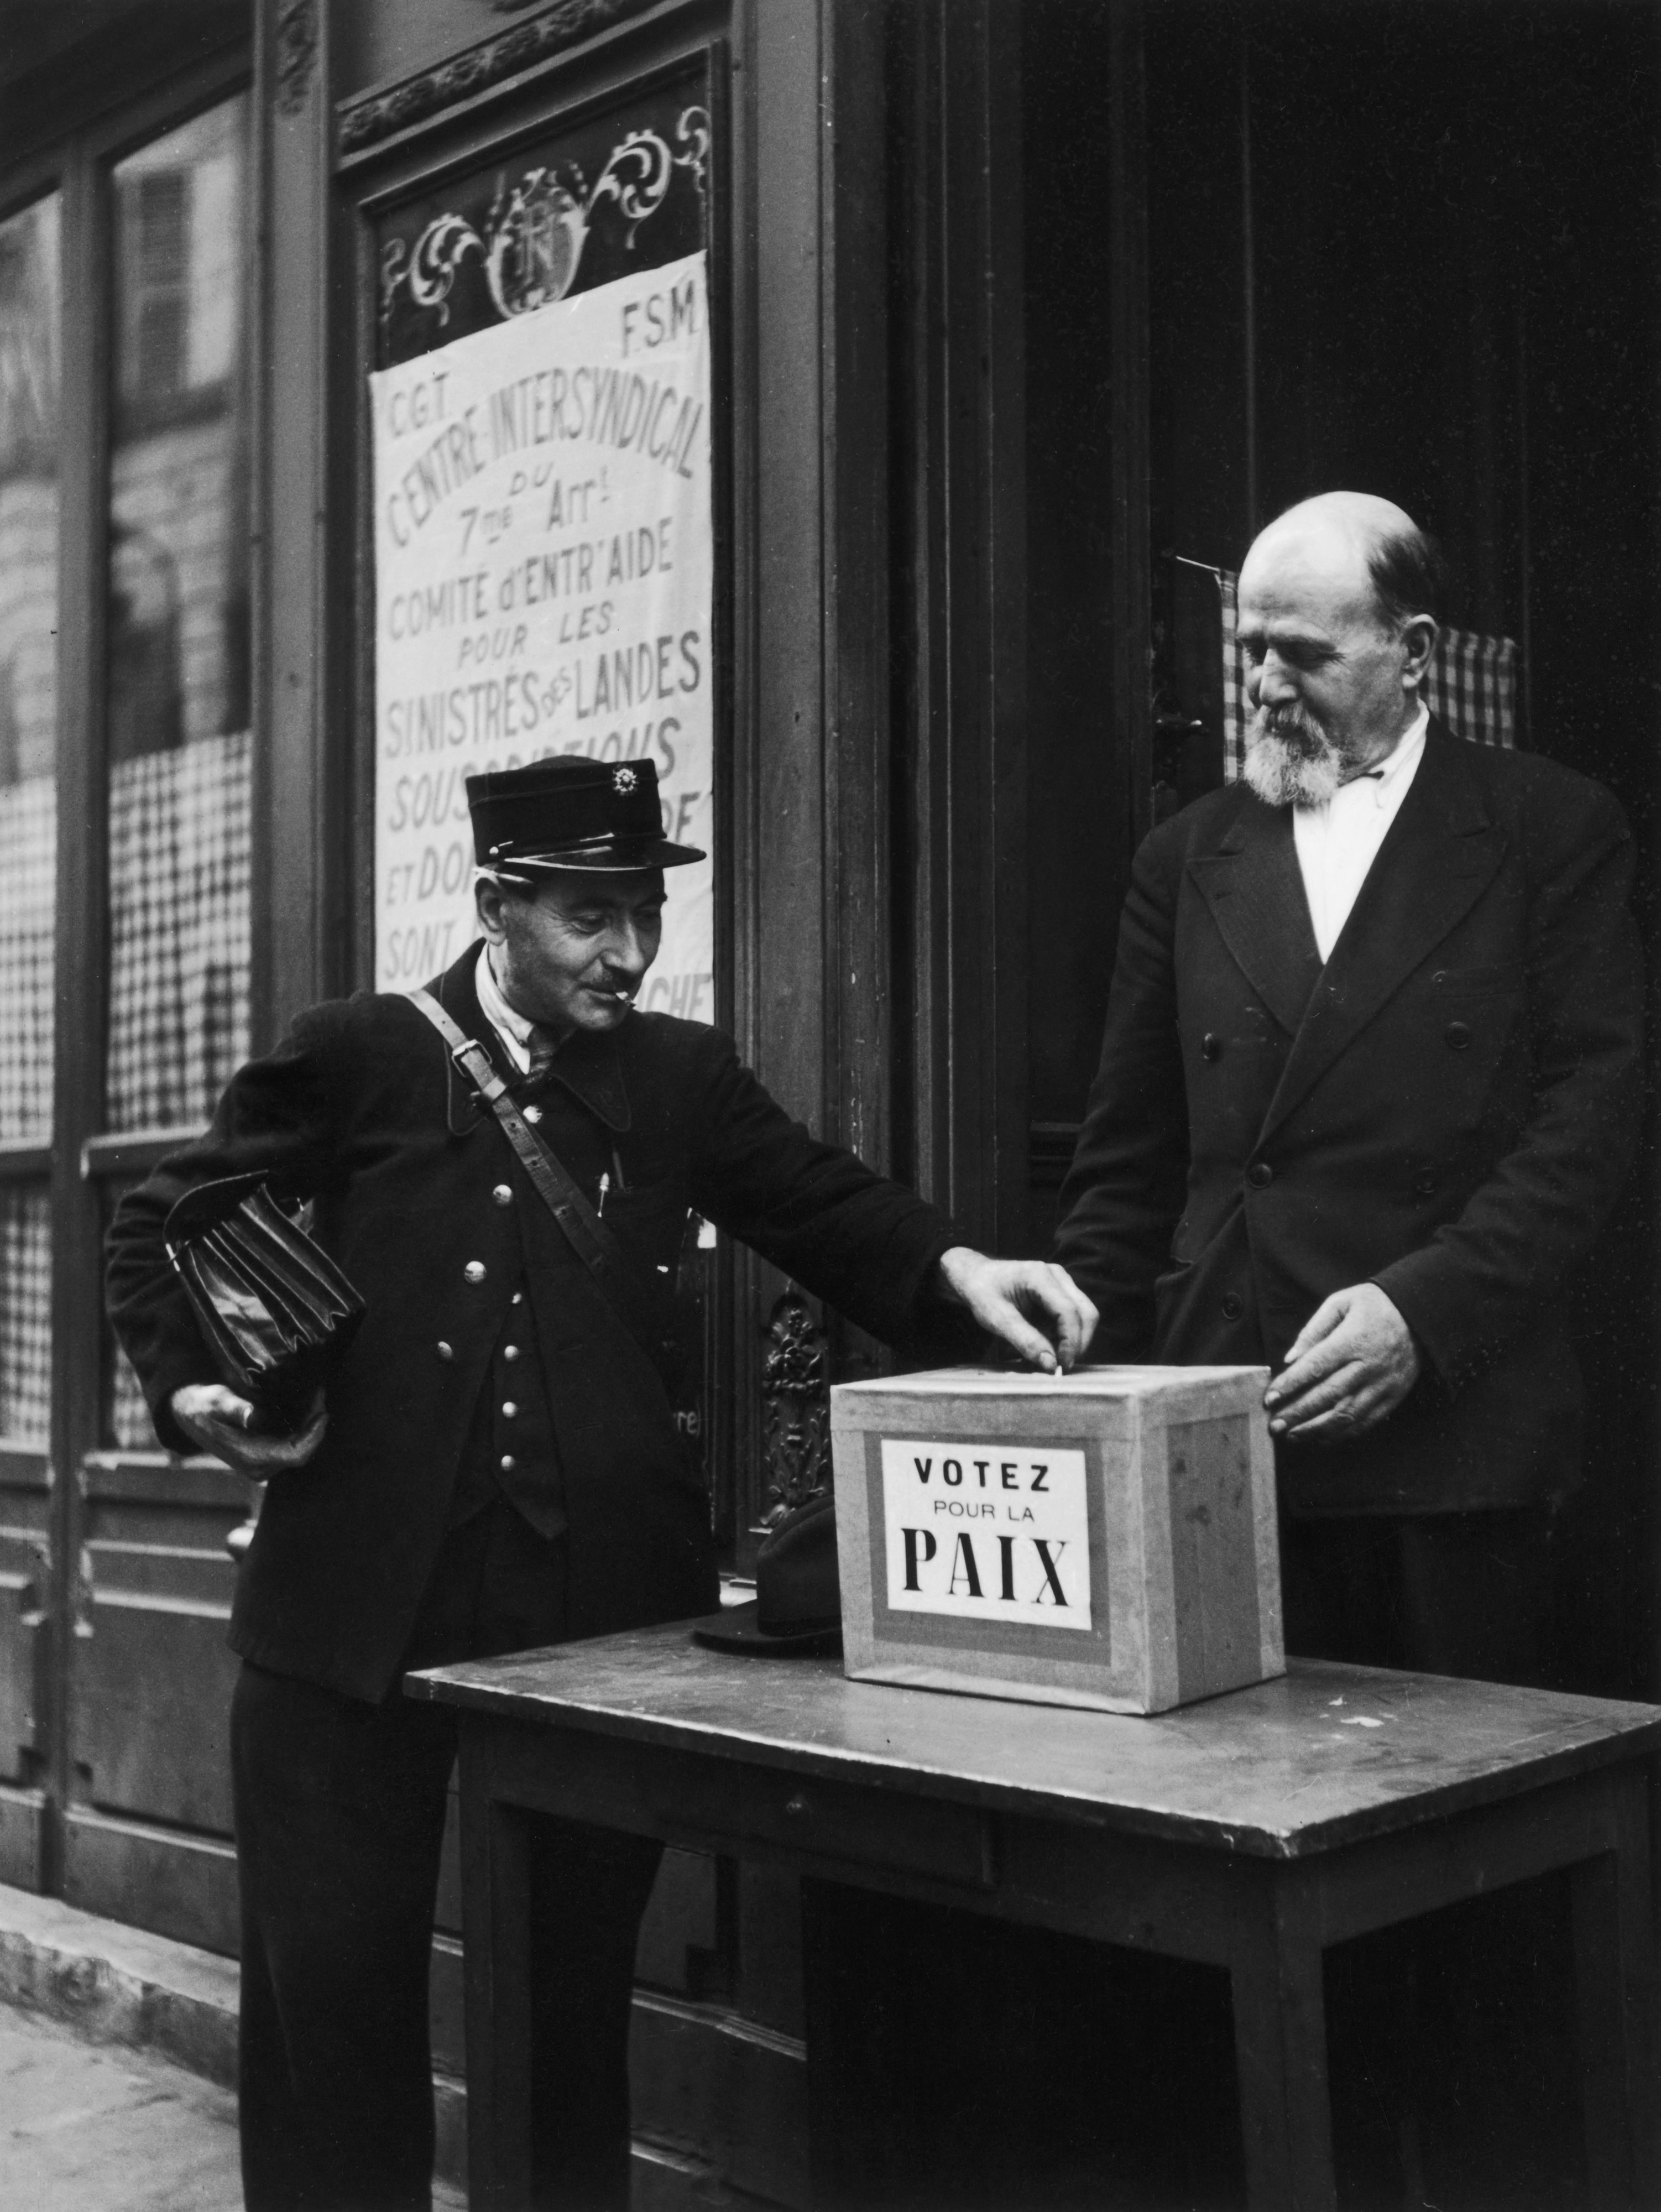 Le facteur vote à l’intersyndicale du VIIe arrondissement, Paris,1949 Epoque